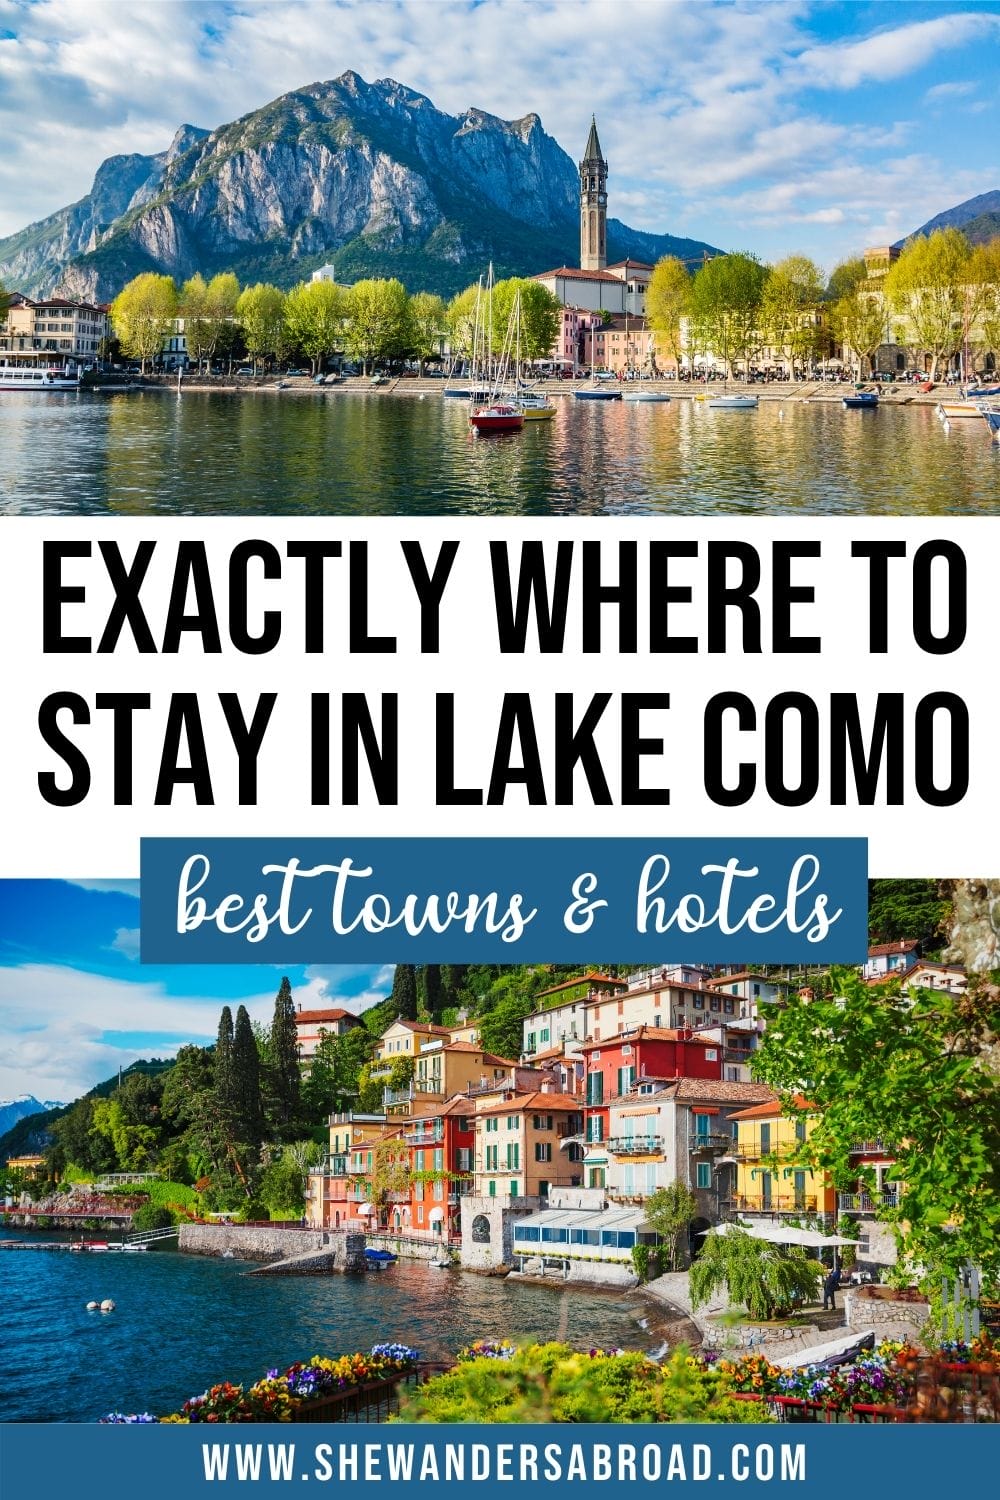 Bästa ställen att bo i Comosjön: bästa städer Hotell